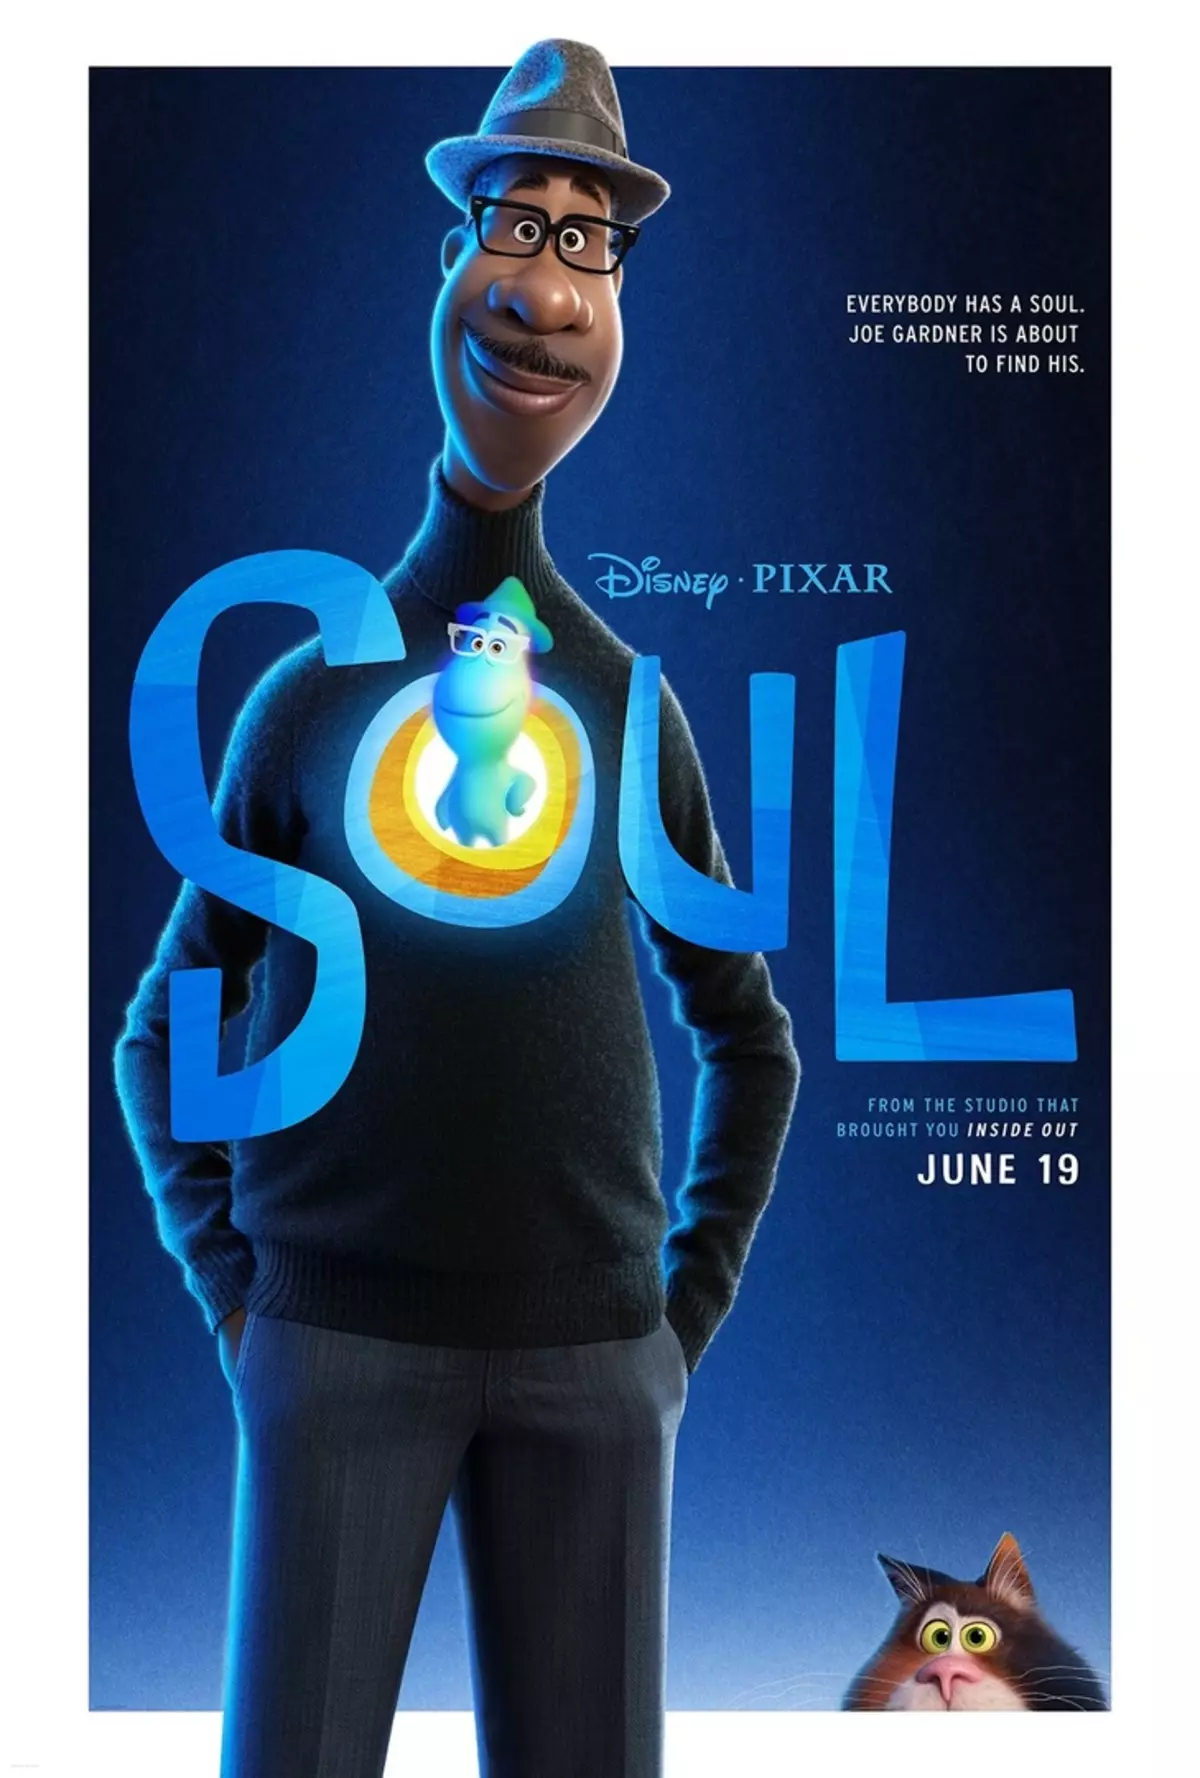 Studio Pixar yeni cizgi filmi üçün bir qoşqu təqdim etdi 28825_1